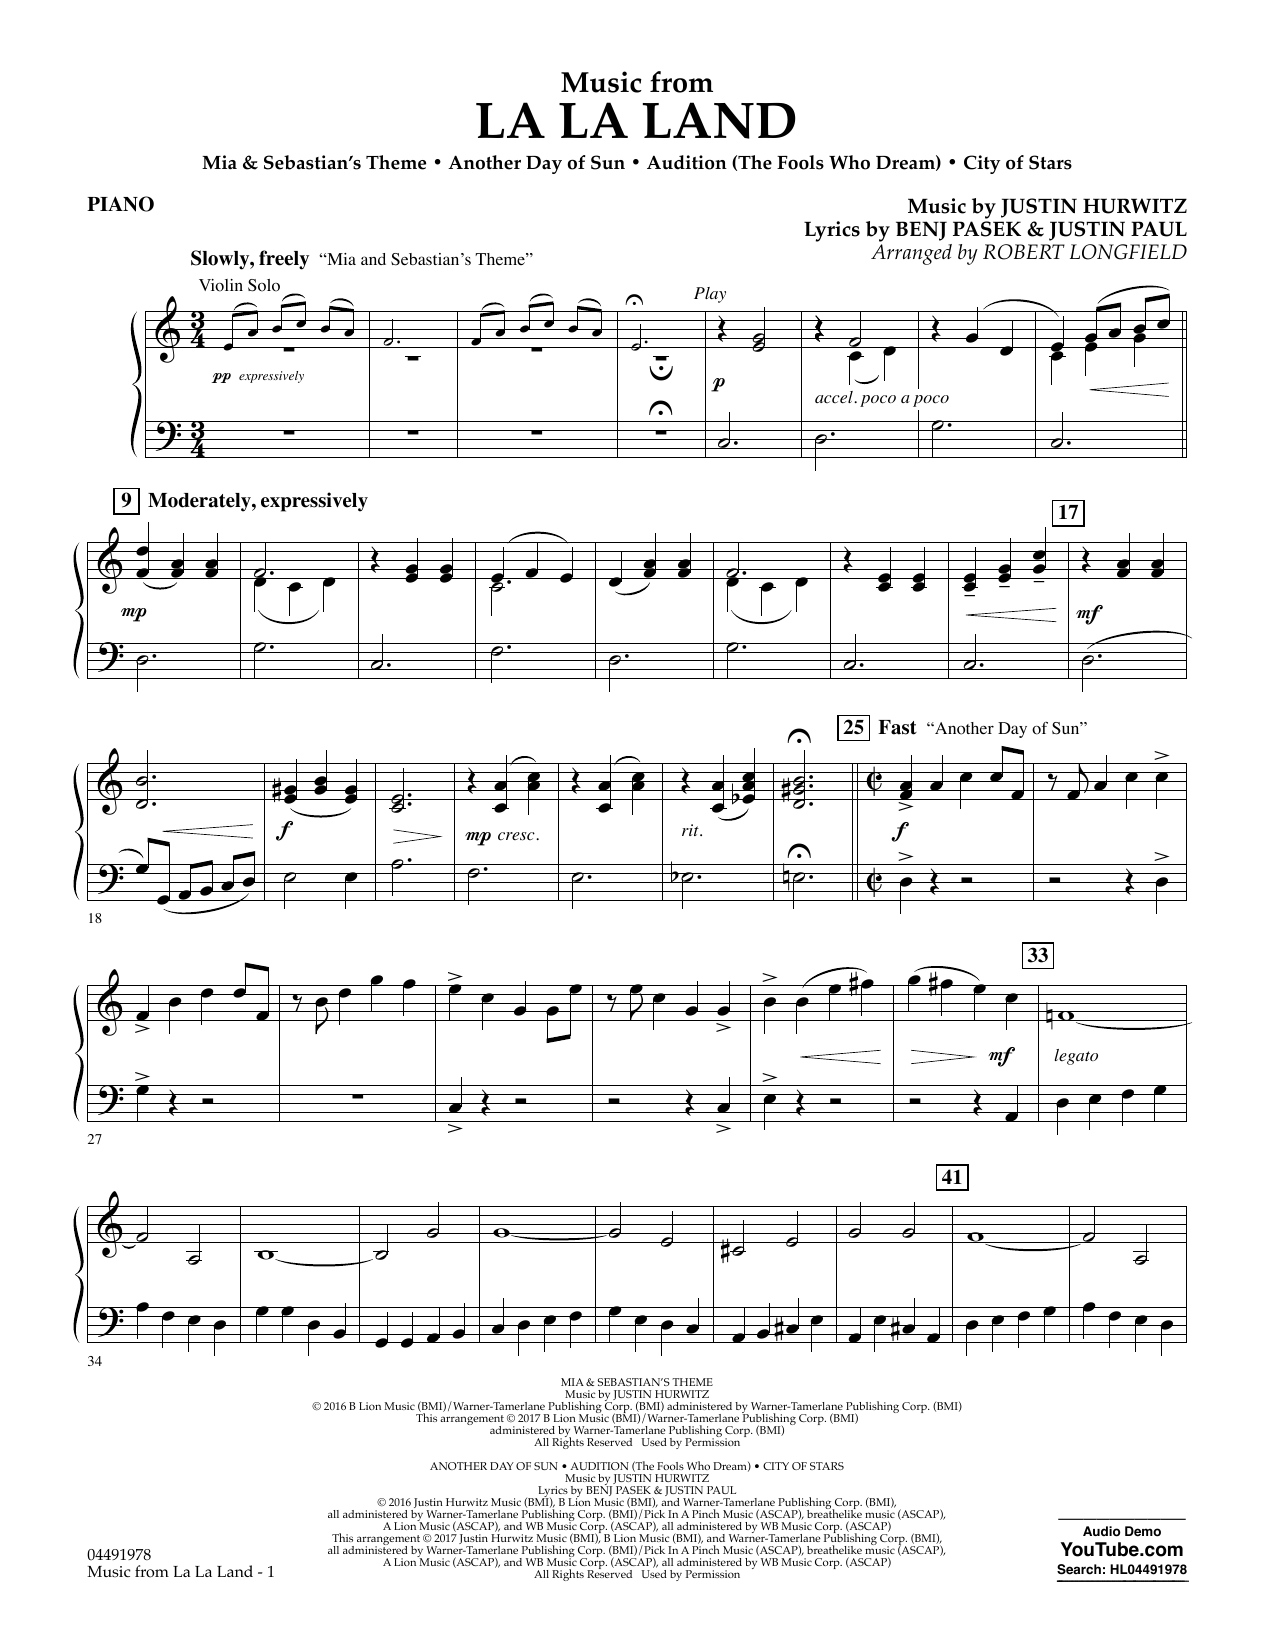 Download Robert Longfield Music from La La Land - Piano Sheet Music